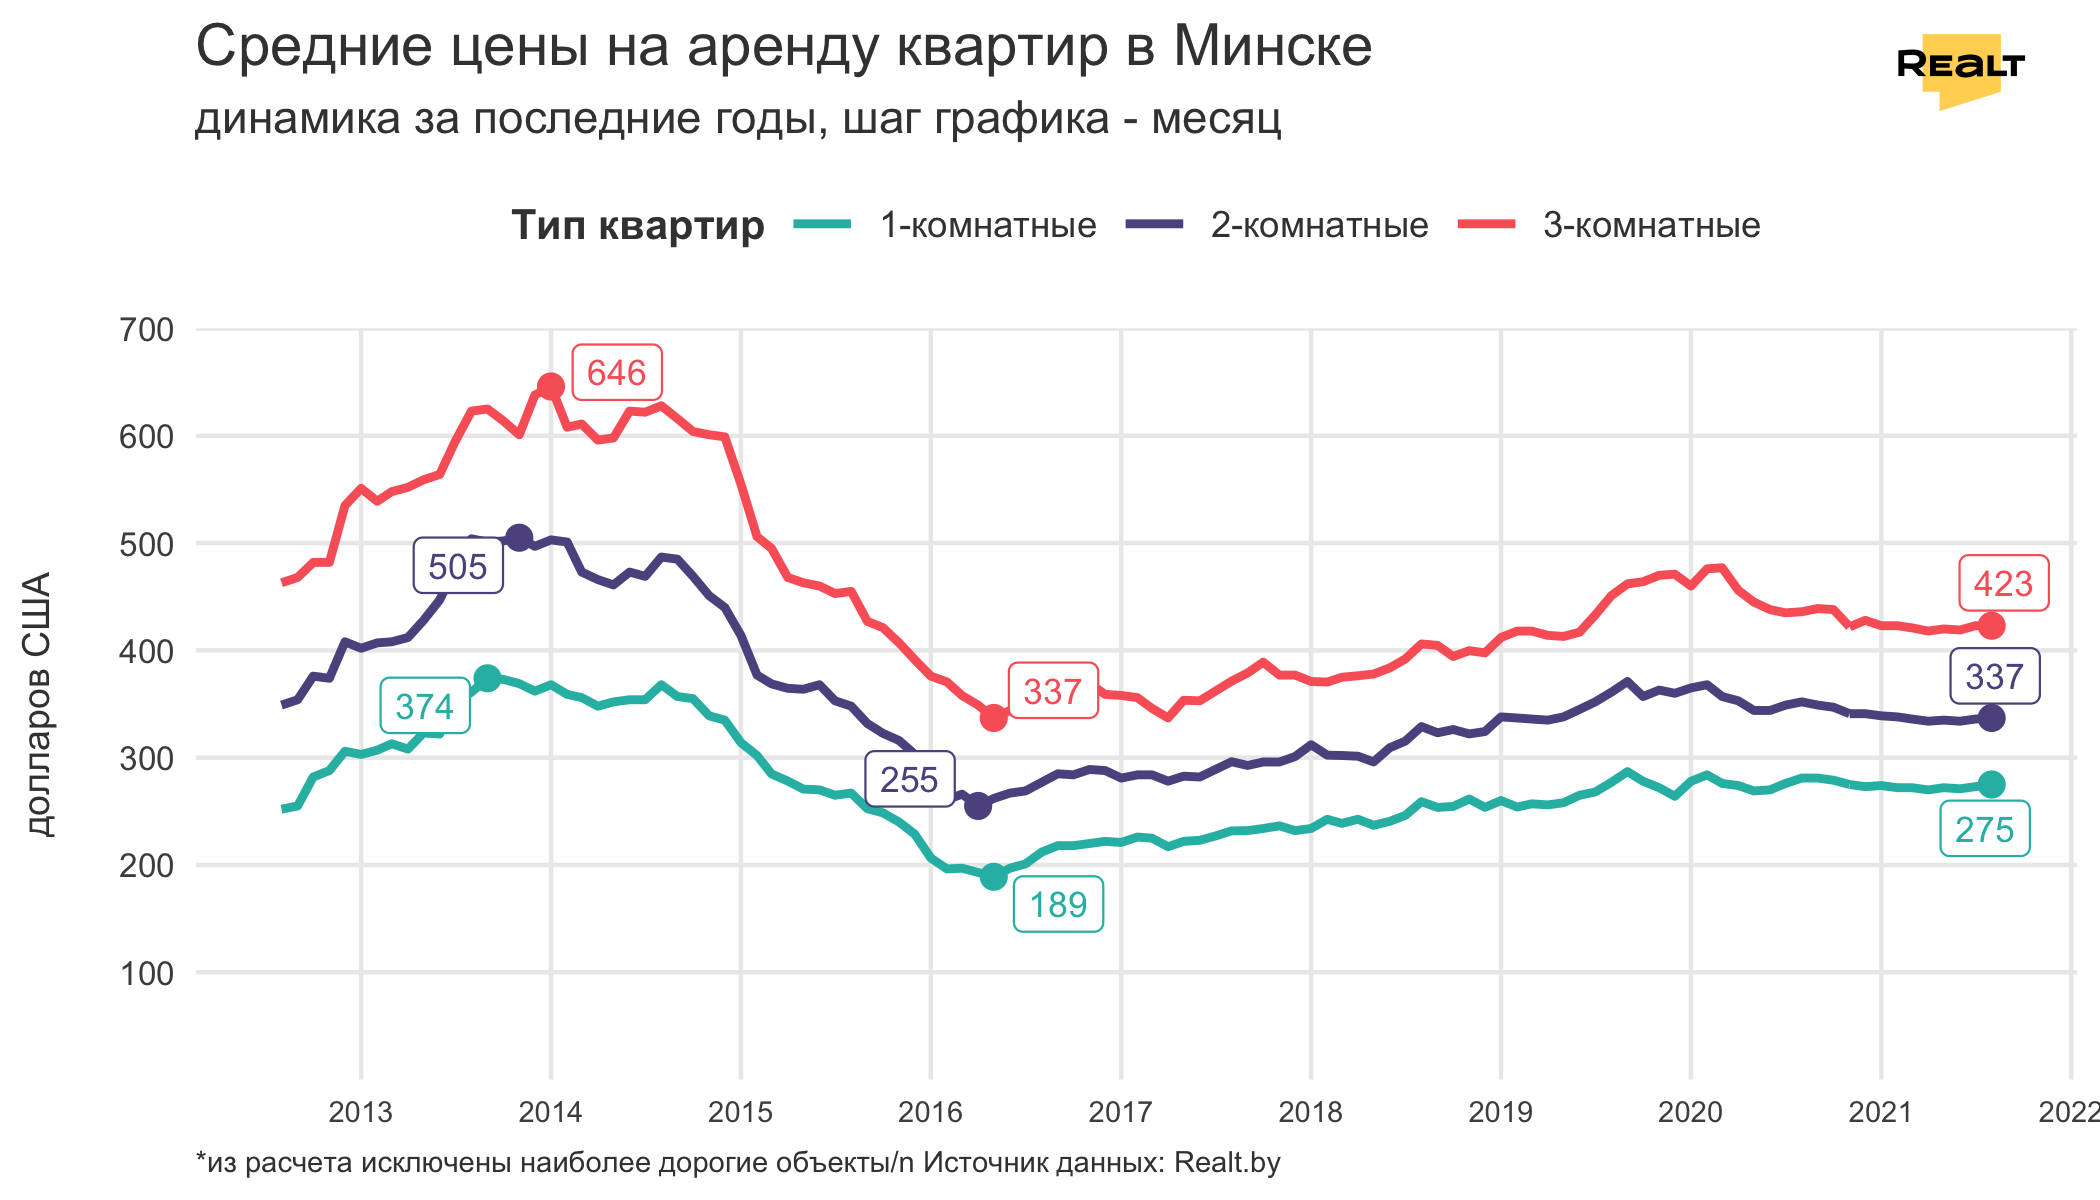 Спрос упал, несмотря на студентов. Что происходило в августе на рынке аренды квартир в Минске